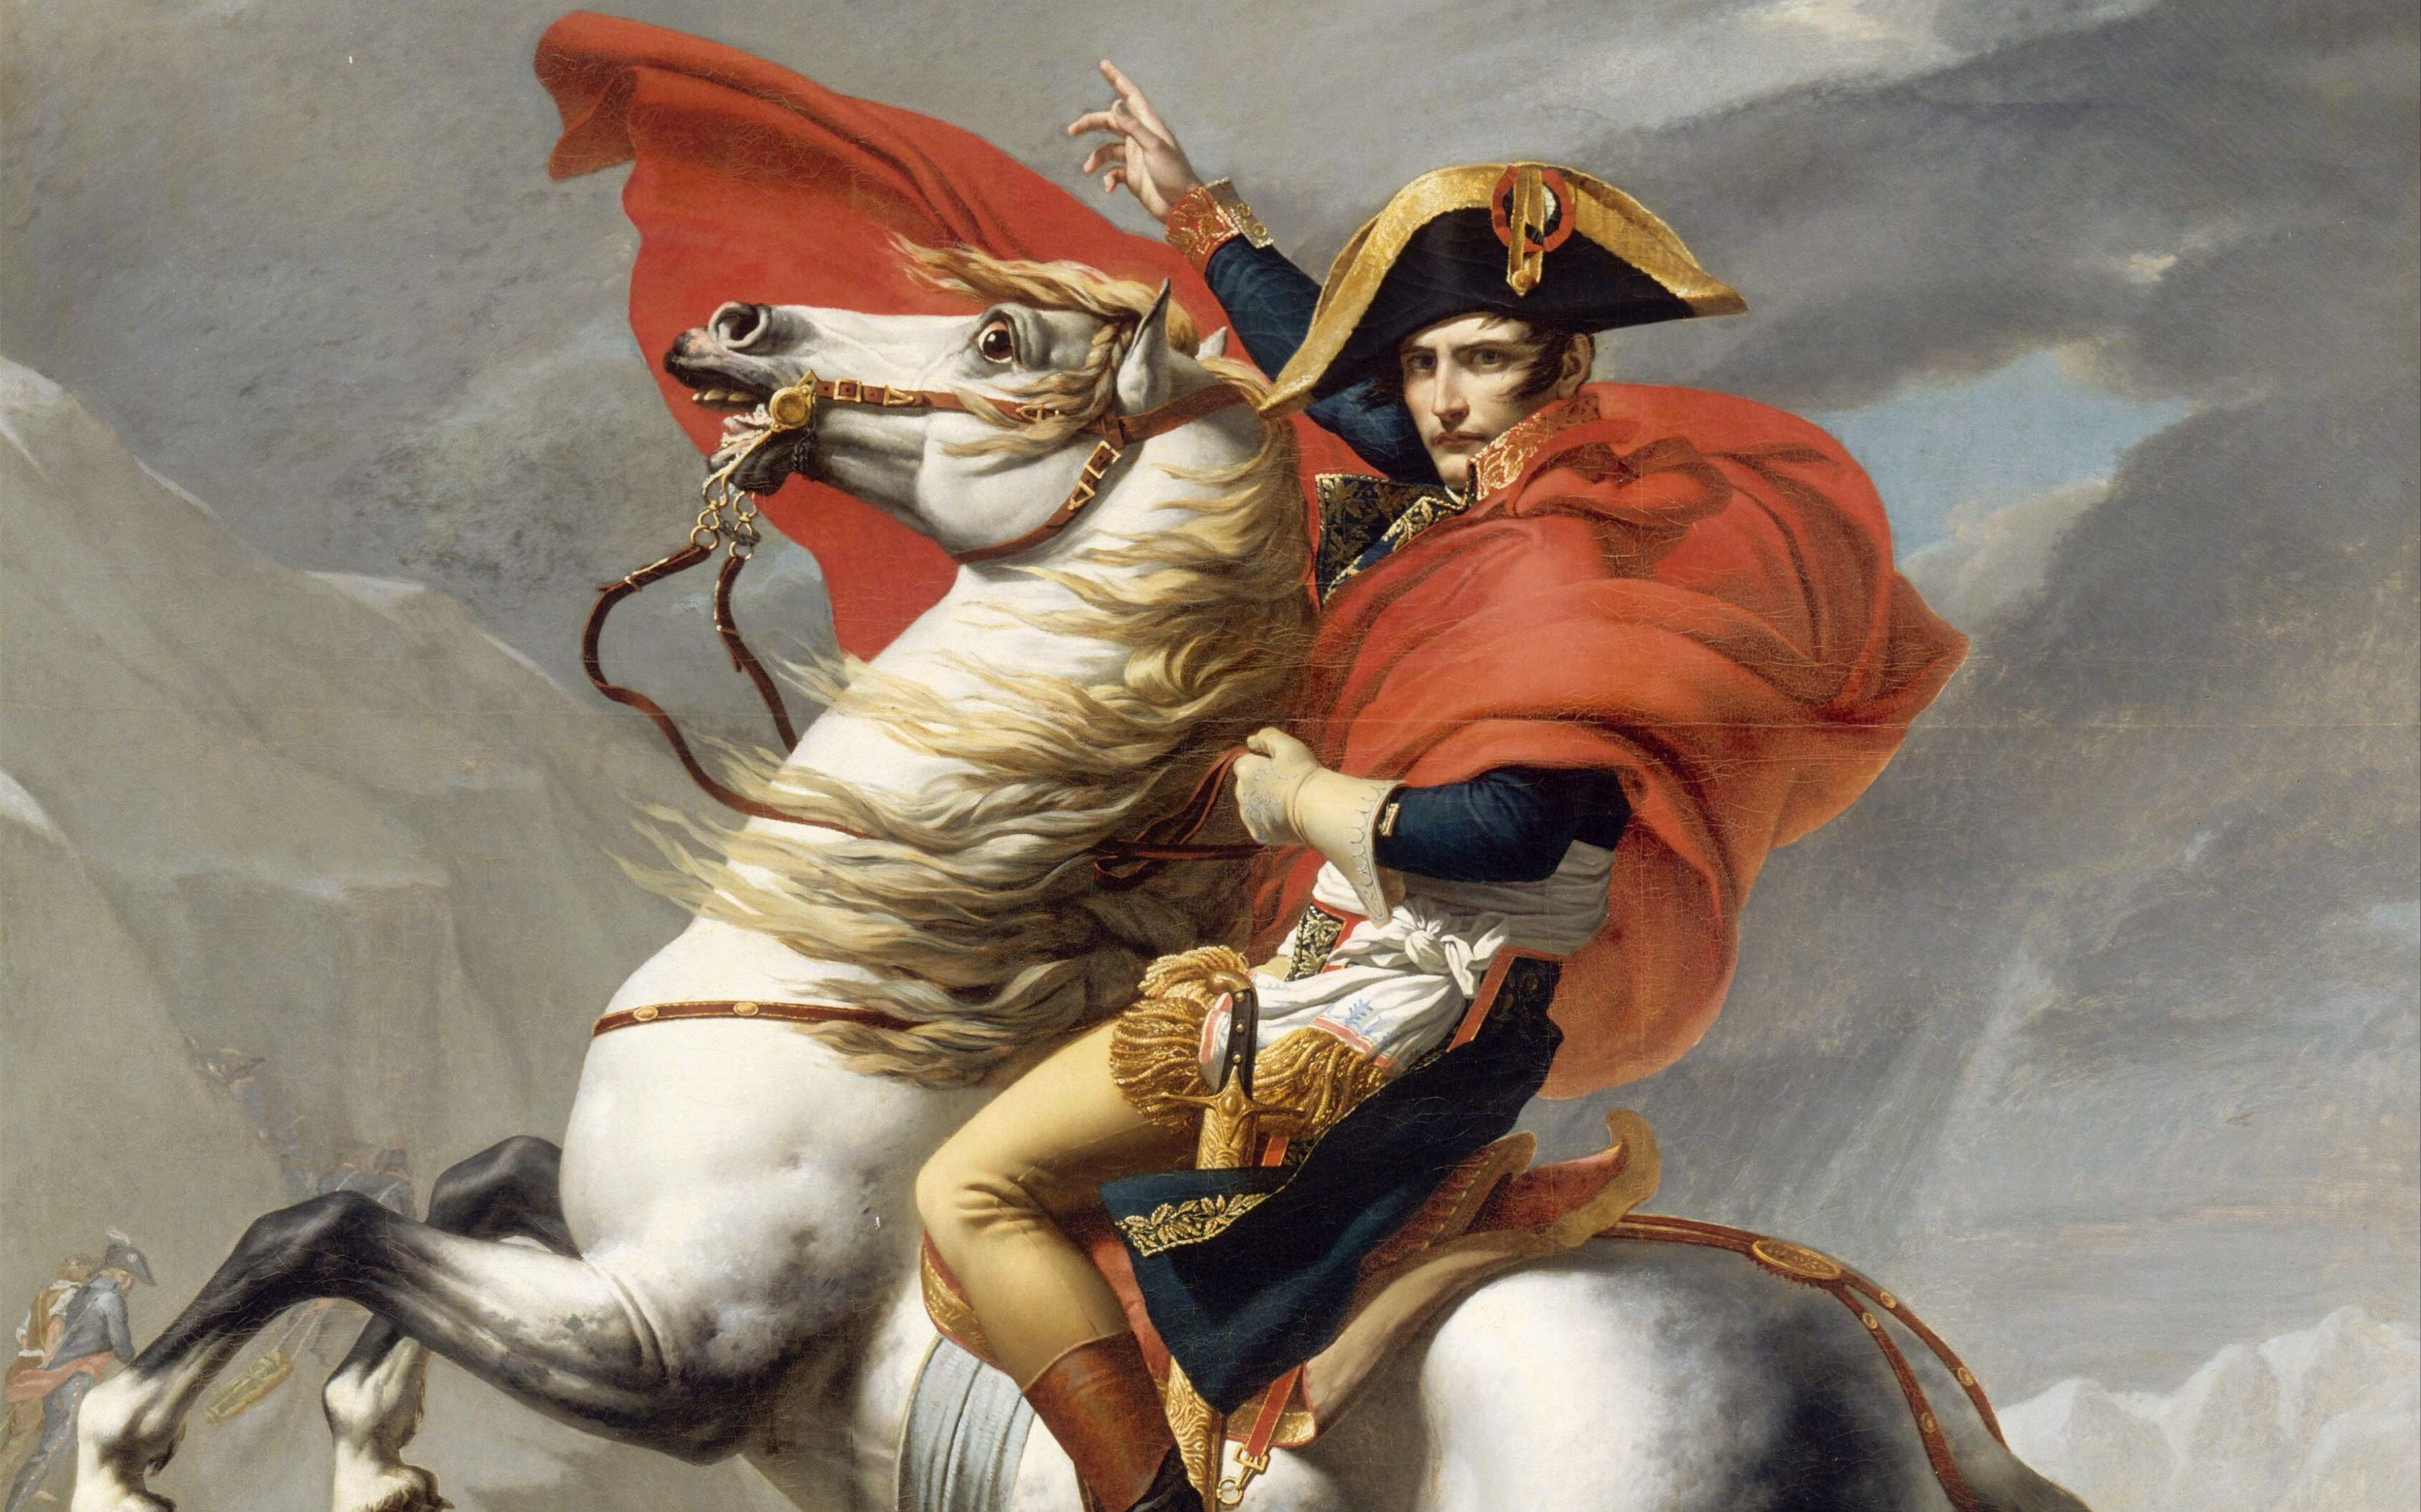 拿破仑生活的时代背景图片